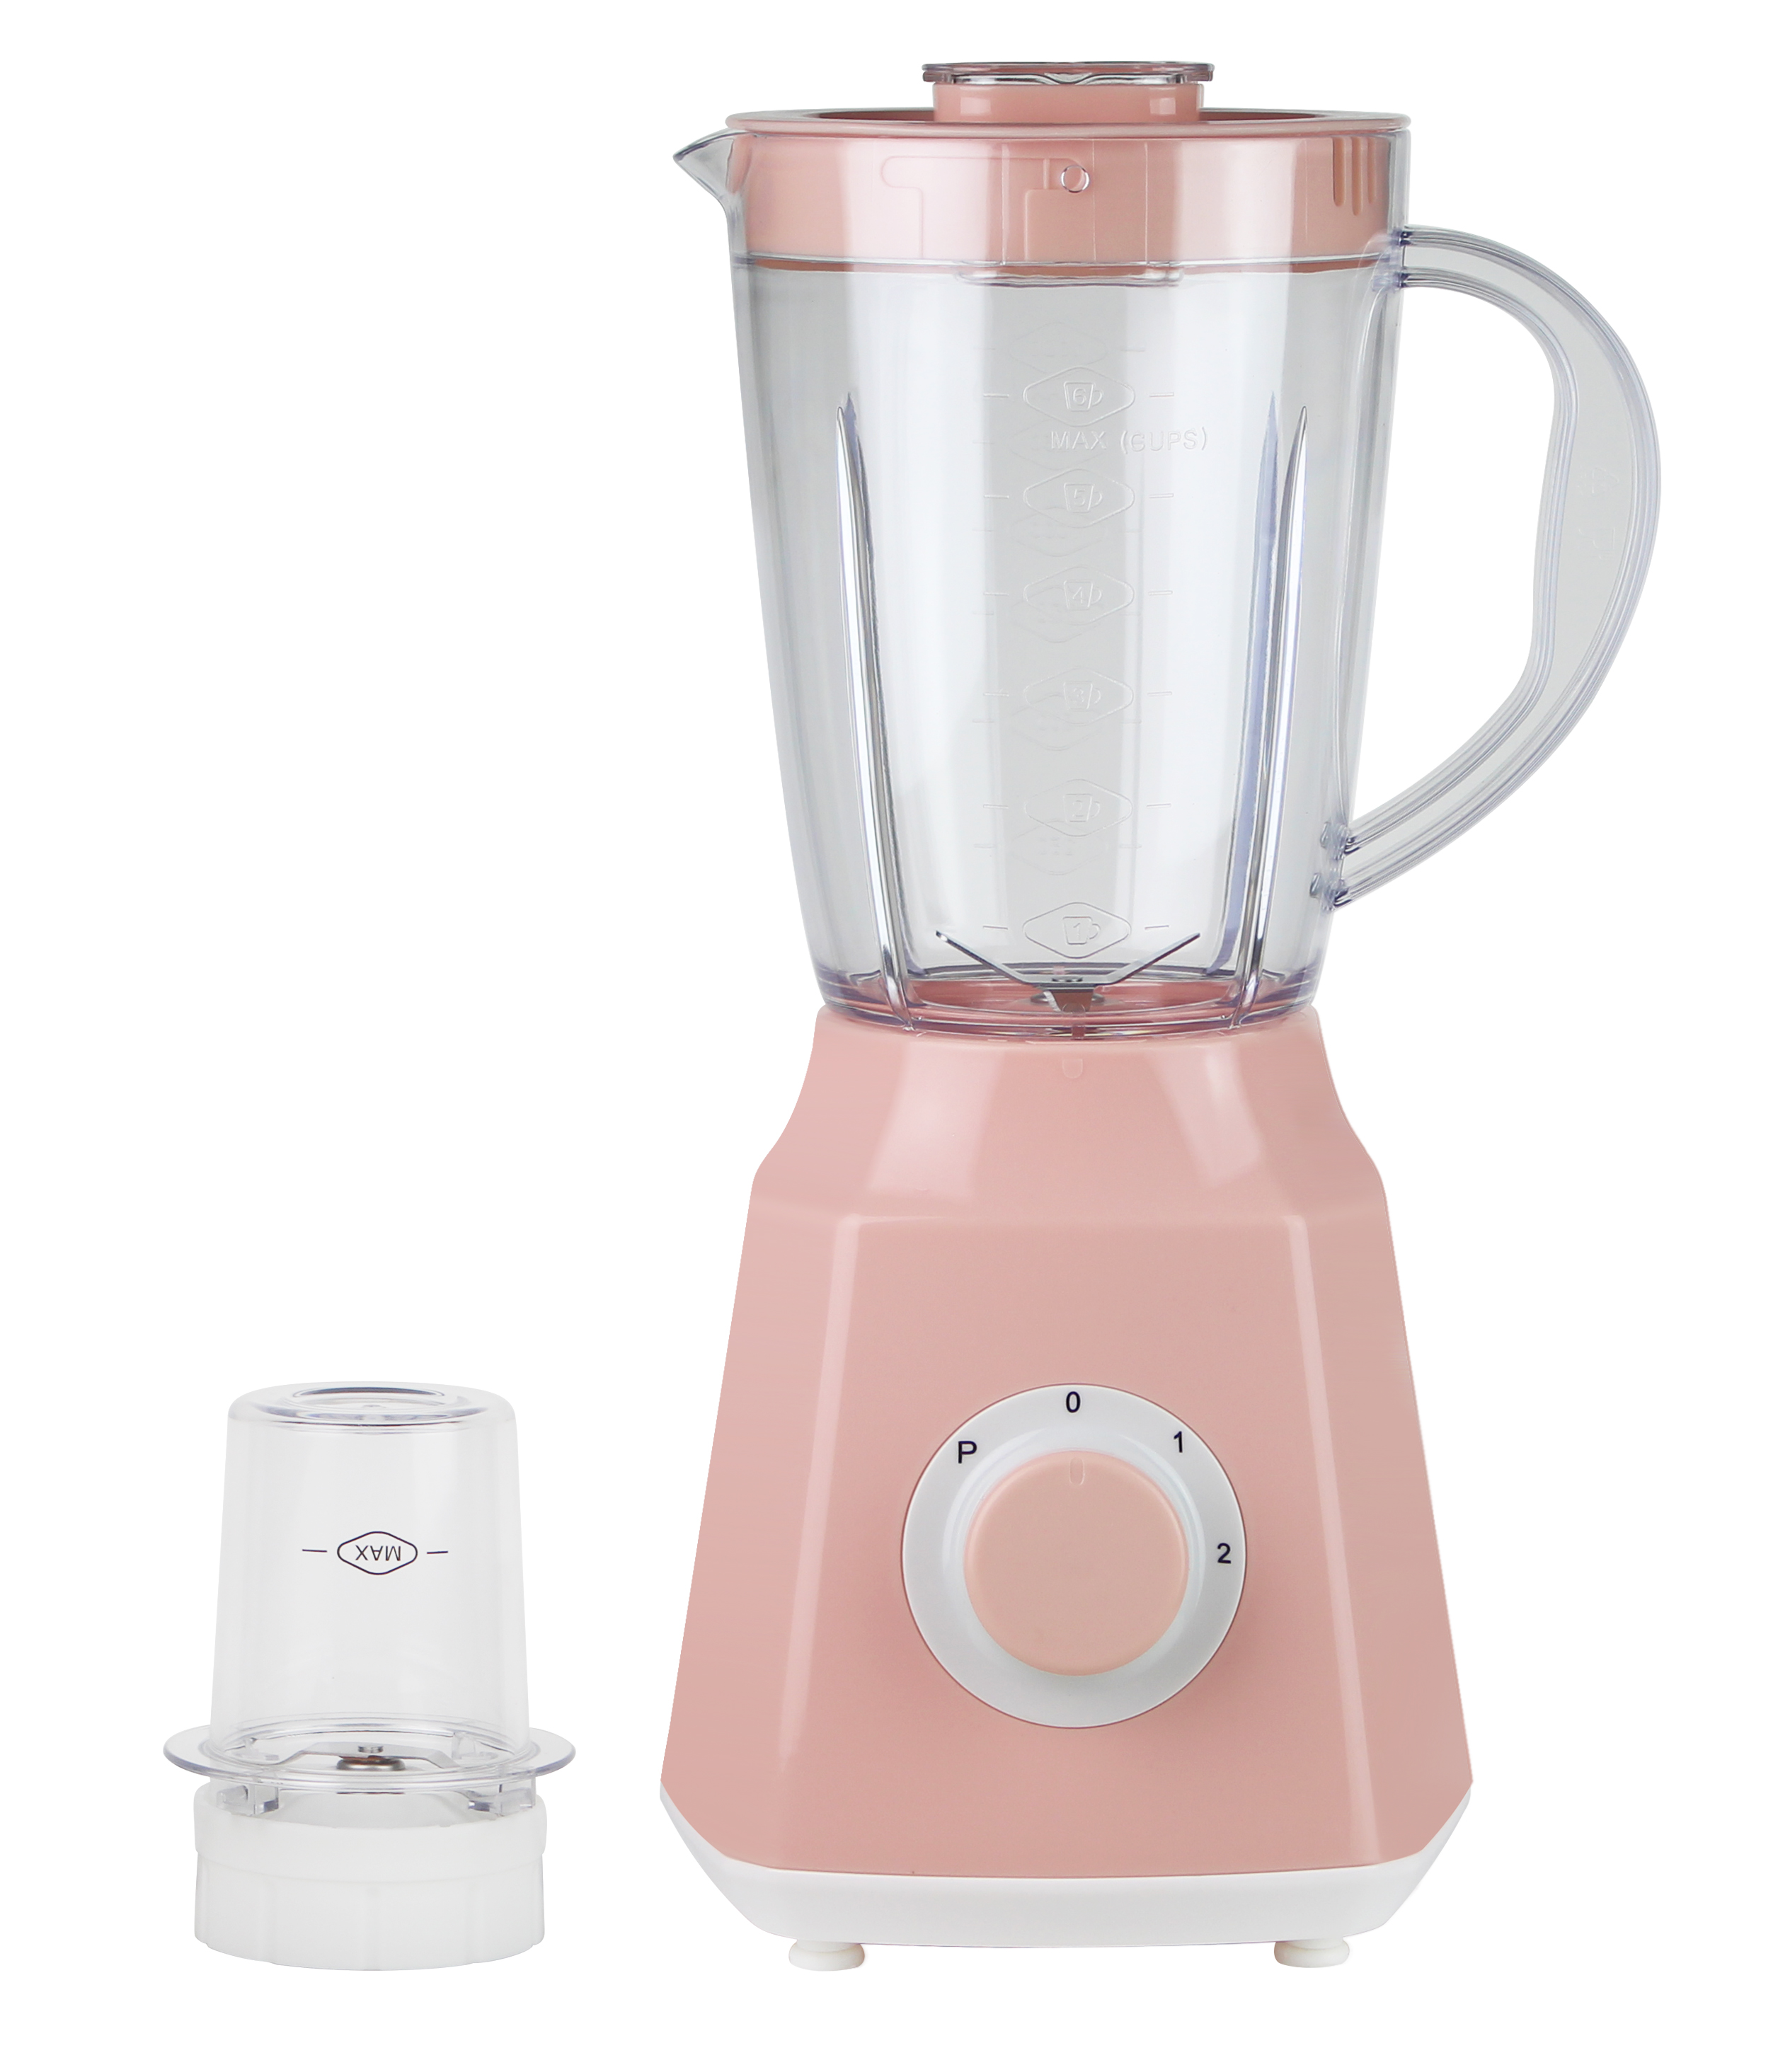 搅拌机坚不可摧的塑料 PC 粉红色罐子颜色 2 速家用电器厨房 300-350W 1.5L 